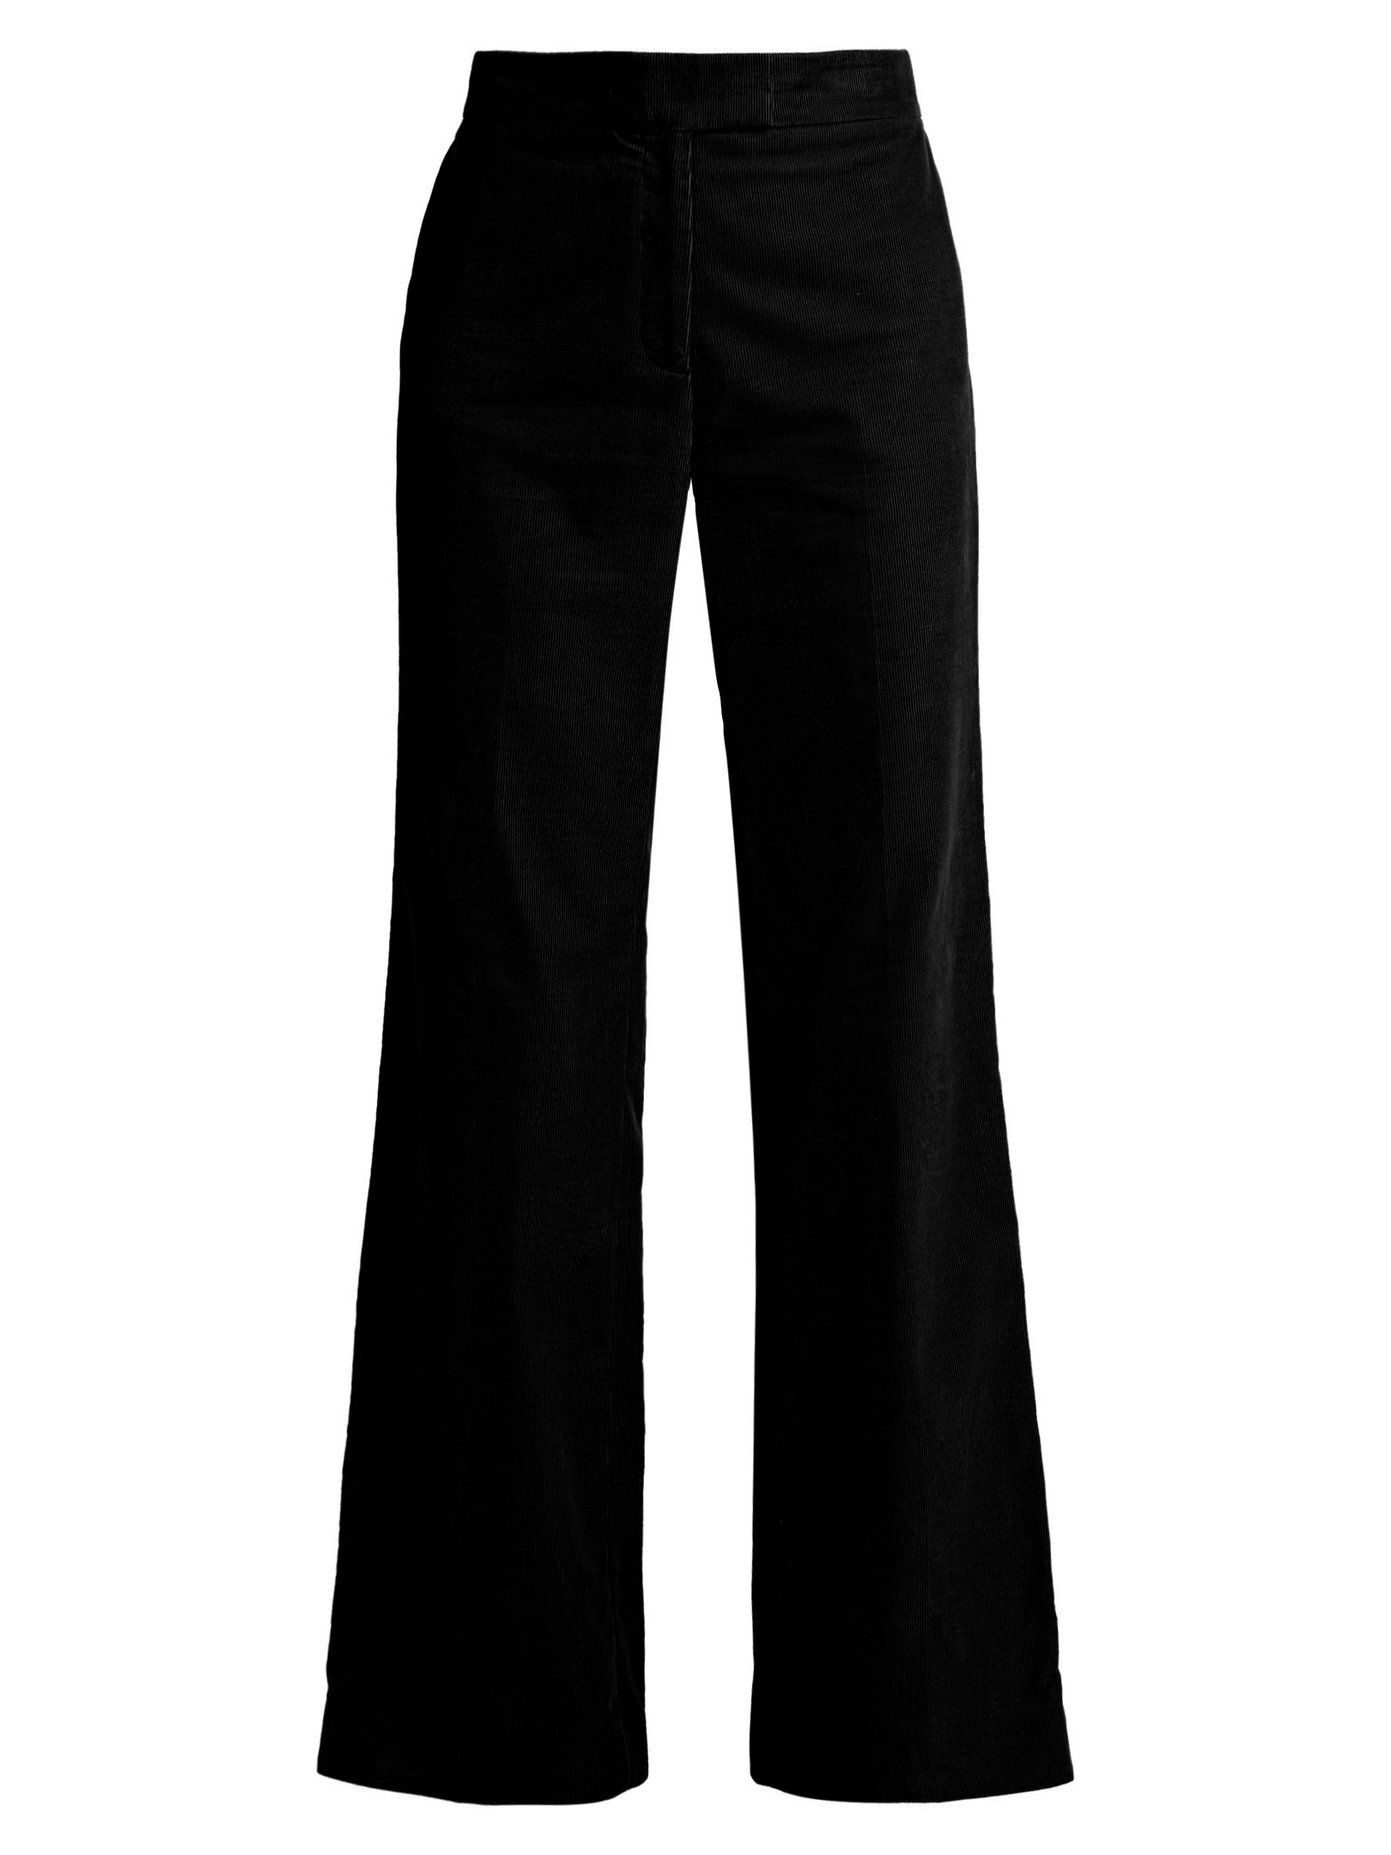 wide leg black corduroy trousers